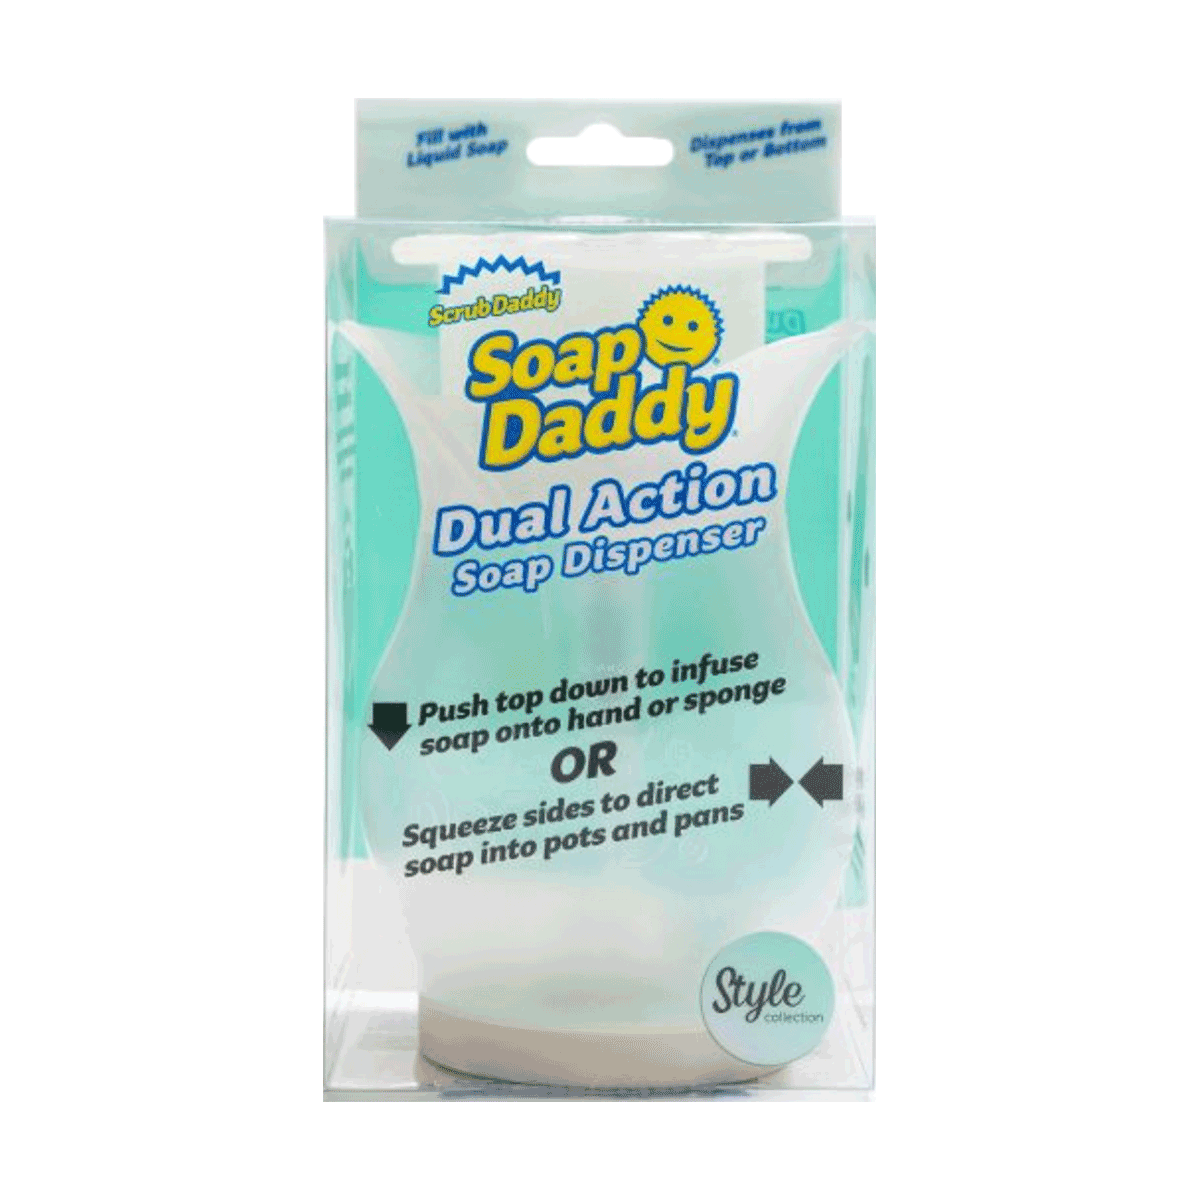 Soap Daddy, Dispensador de Jabón y Detergente Scrub Daddy, la esponja favorita de USA, 1 unidad